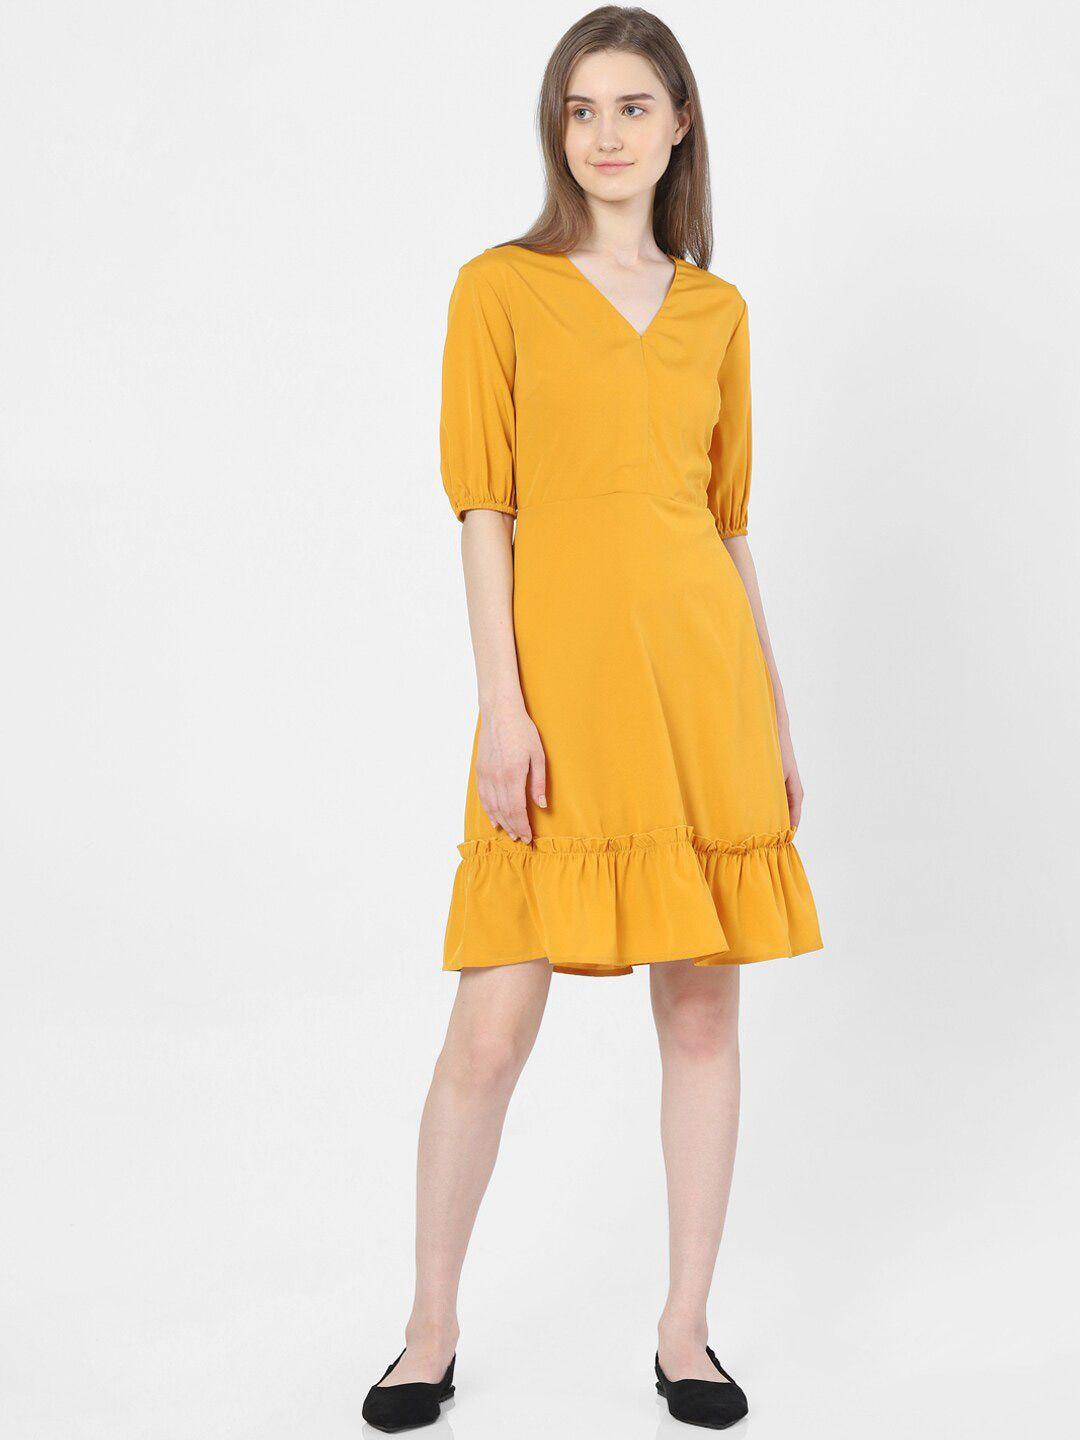 vero moda women yellow dress